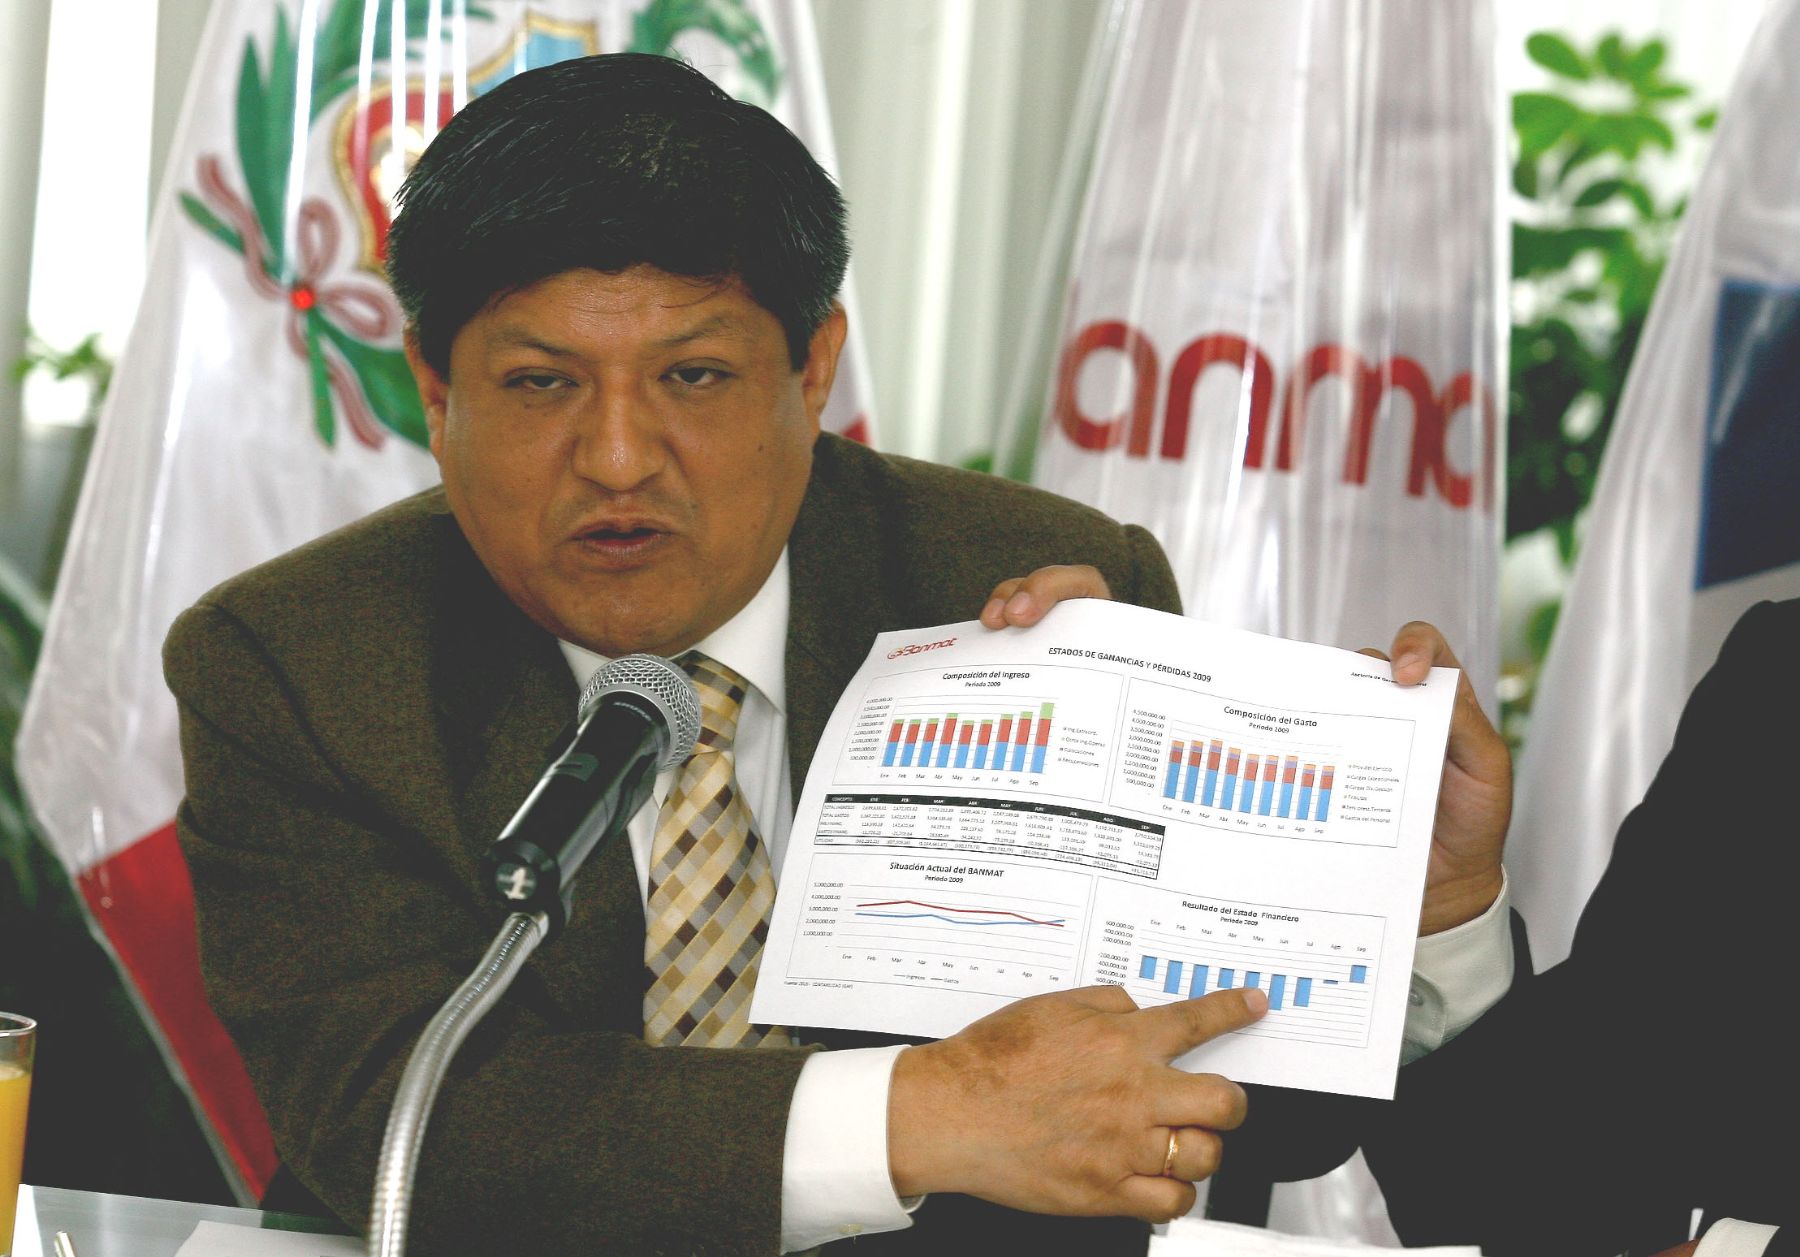 Gerente del Banco de Materiales, Víctor Raúl Espinoza, en conferencia de prensa. Foto: ANDINA/Víctor Palomino.